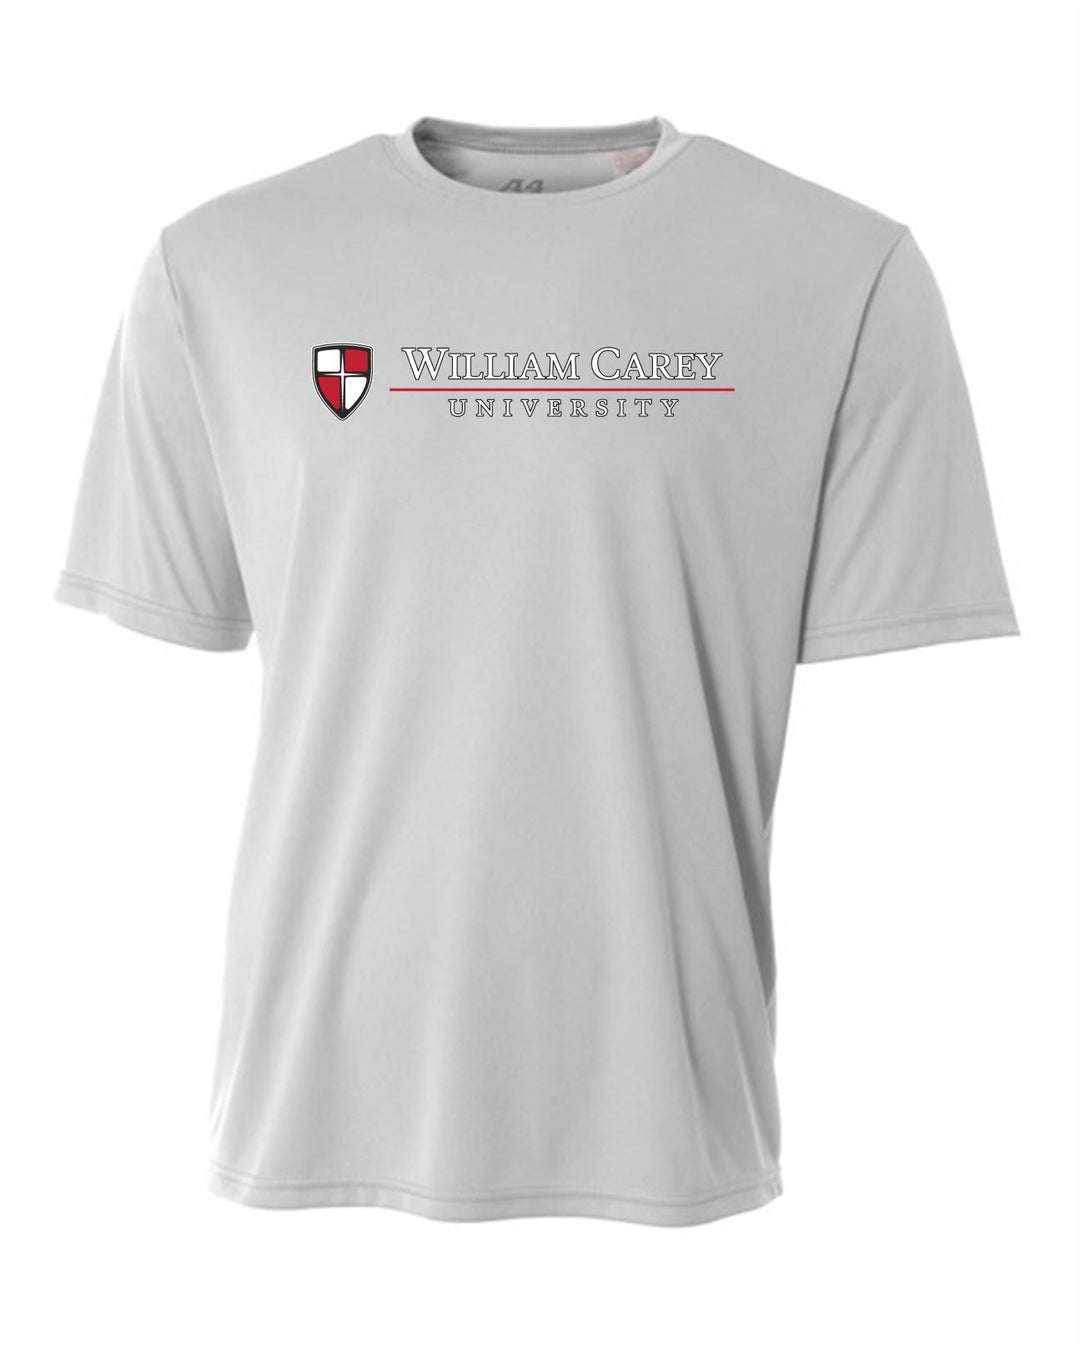 WCU School Of Nursing Youth Short-Sleeve Performance Shirt WCU Nursing Silver Grey Youth Small - Third Coast Soccer